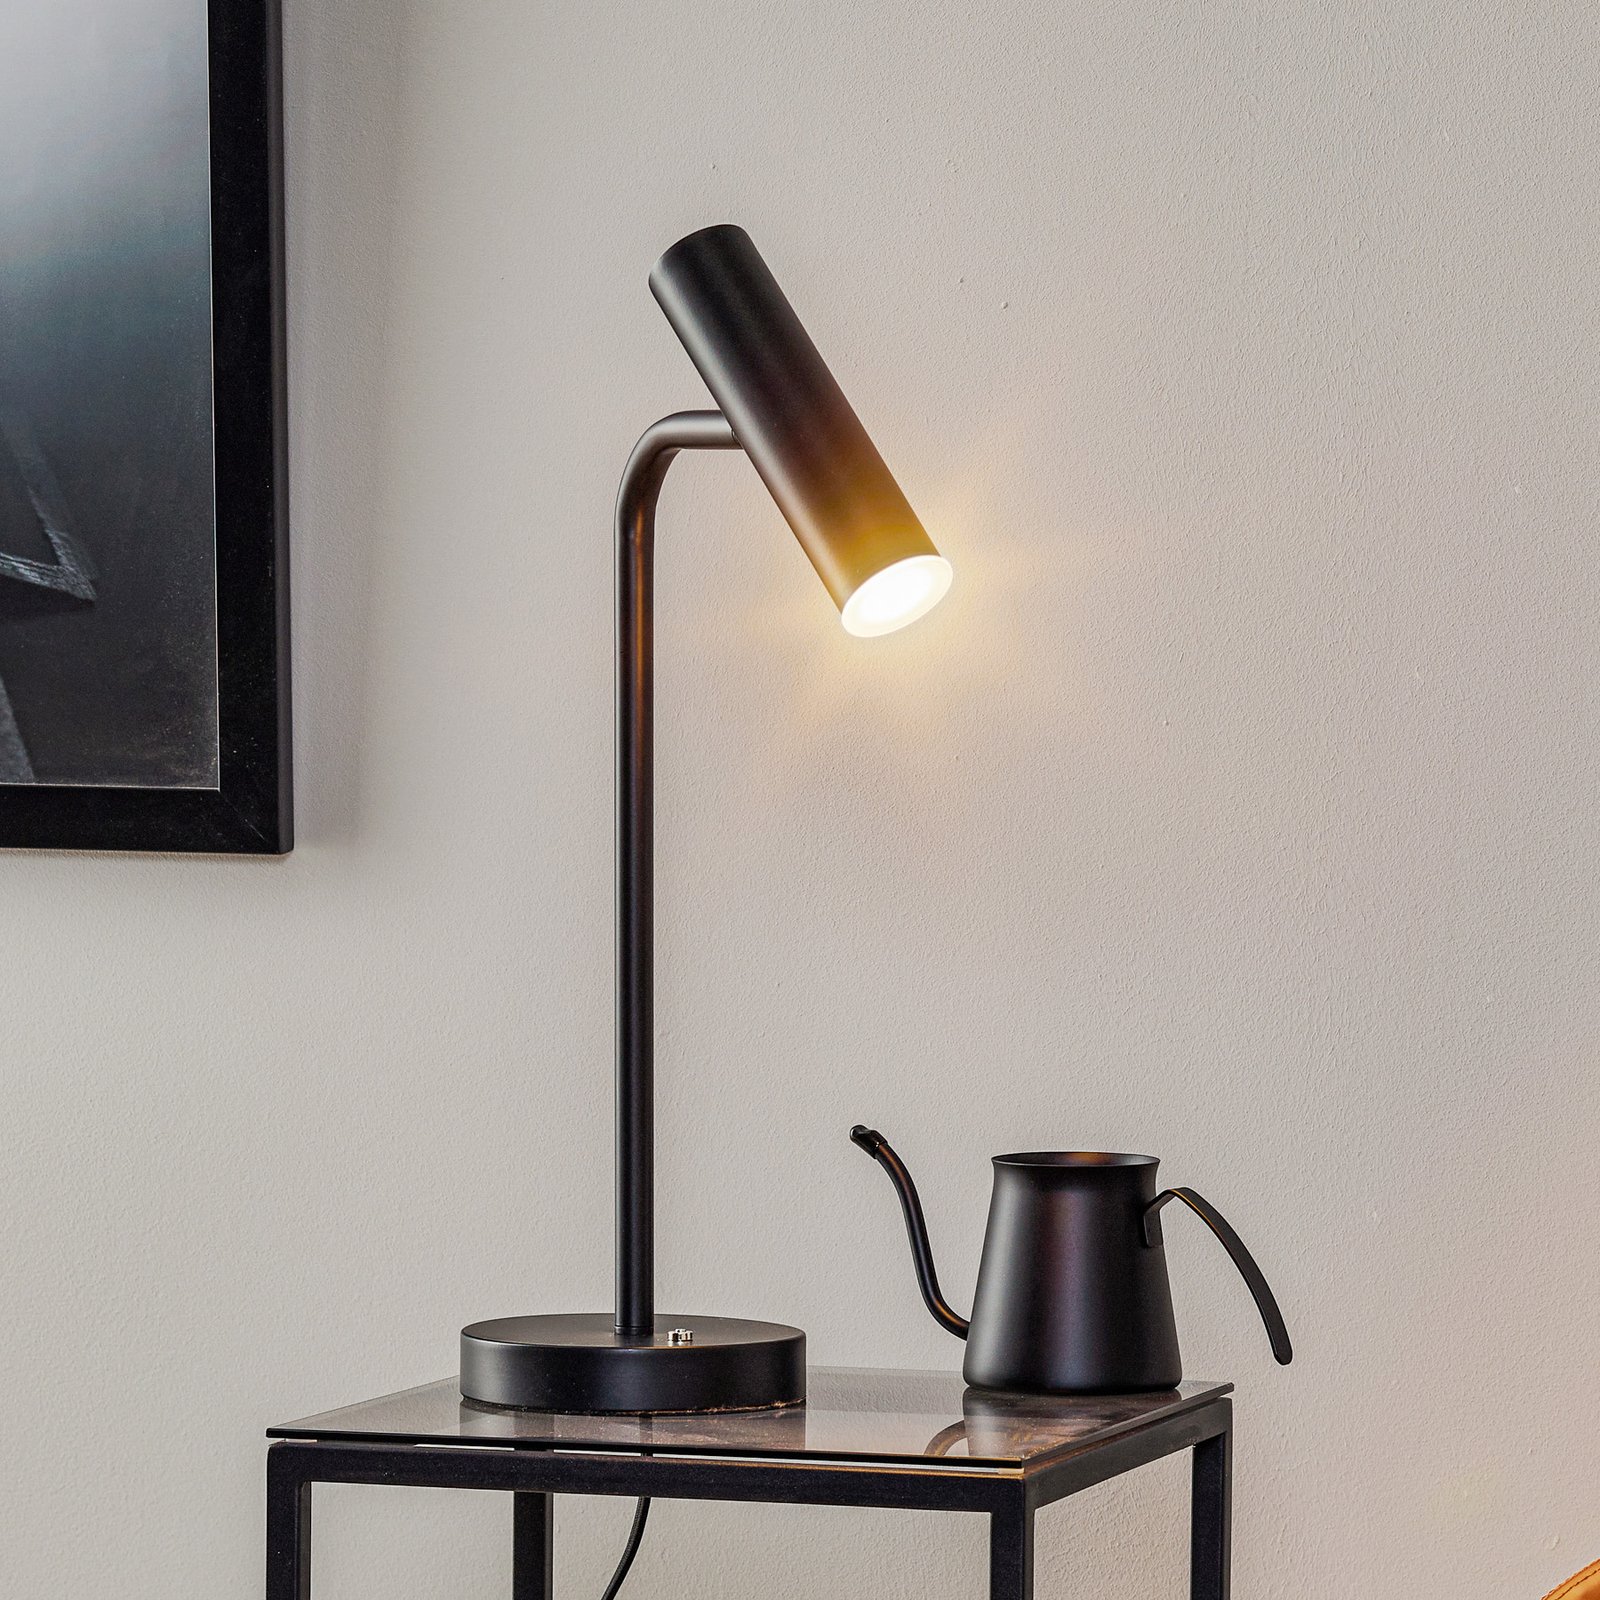 Schöner Wohnen Stina επιτραπέζιο φωτιστικό LED, μαύρο